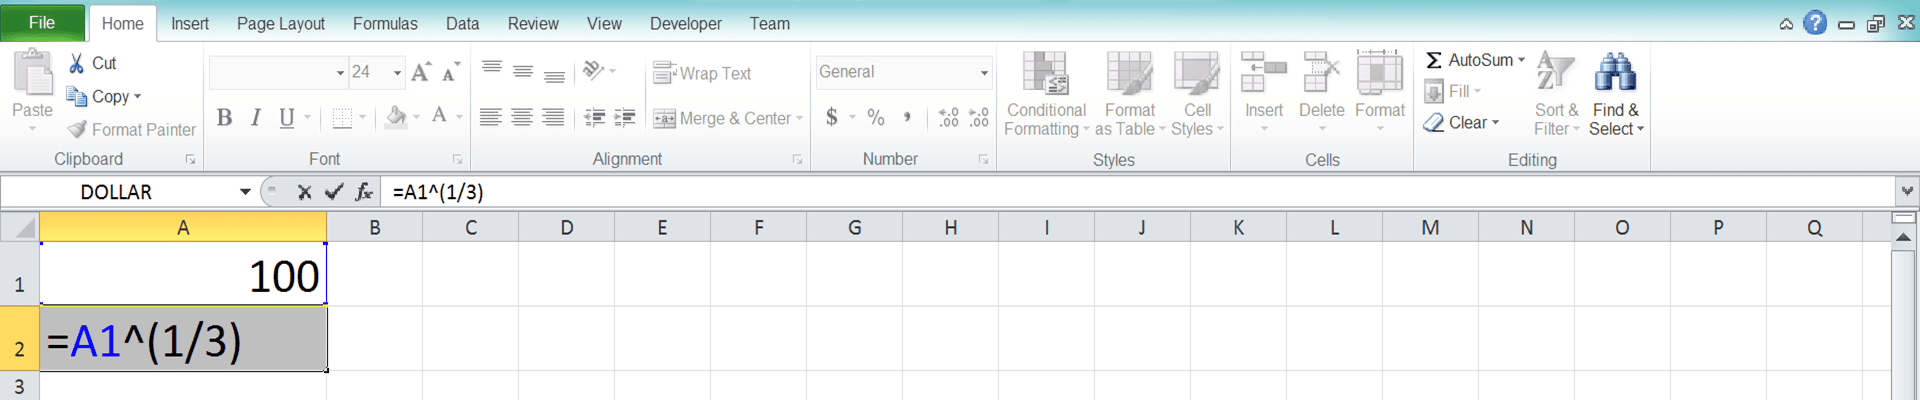 Cara Menghitung Akar di Excel Beserta Berbagai Rumus dan Fungsinya - Screenshot Langkah 1-5